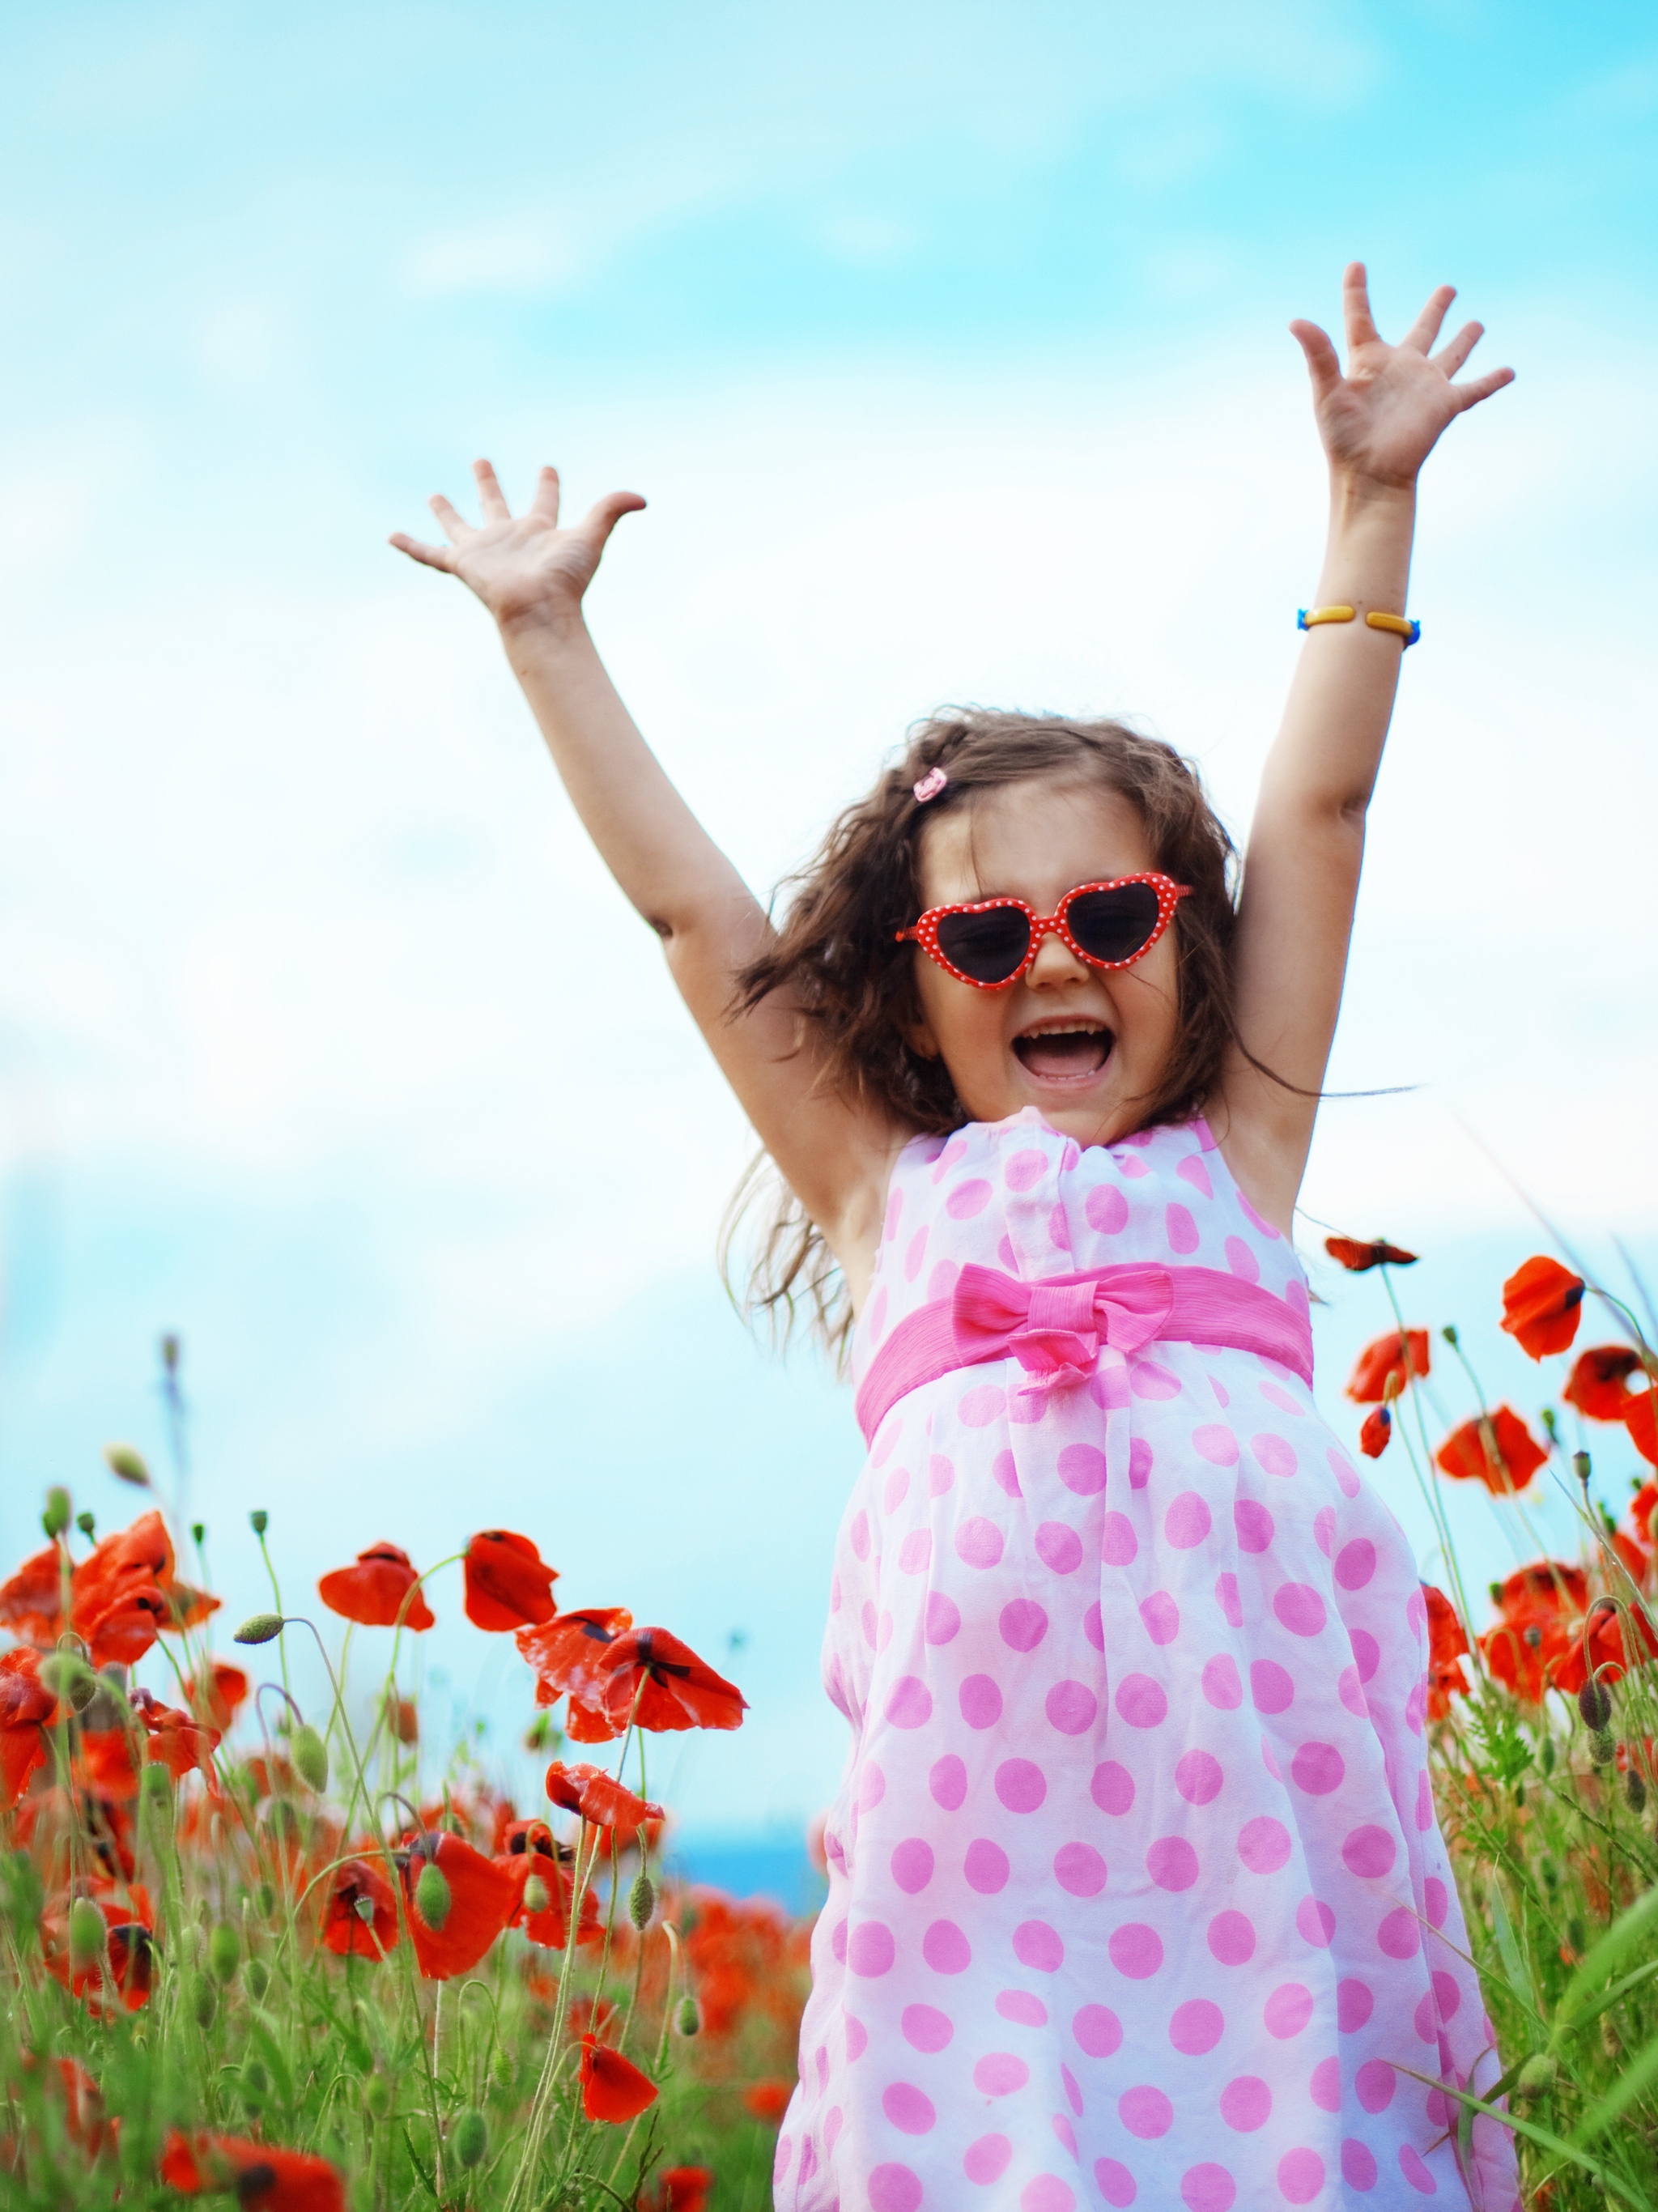 Картинка: Девочка, небо, поле, мак, цветы, очки, радость, счастье